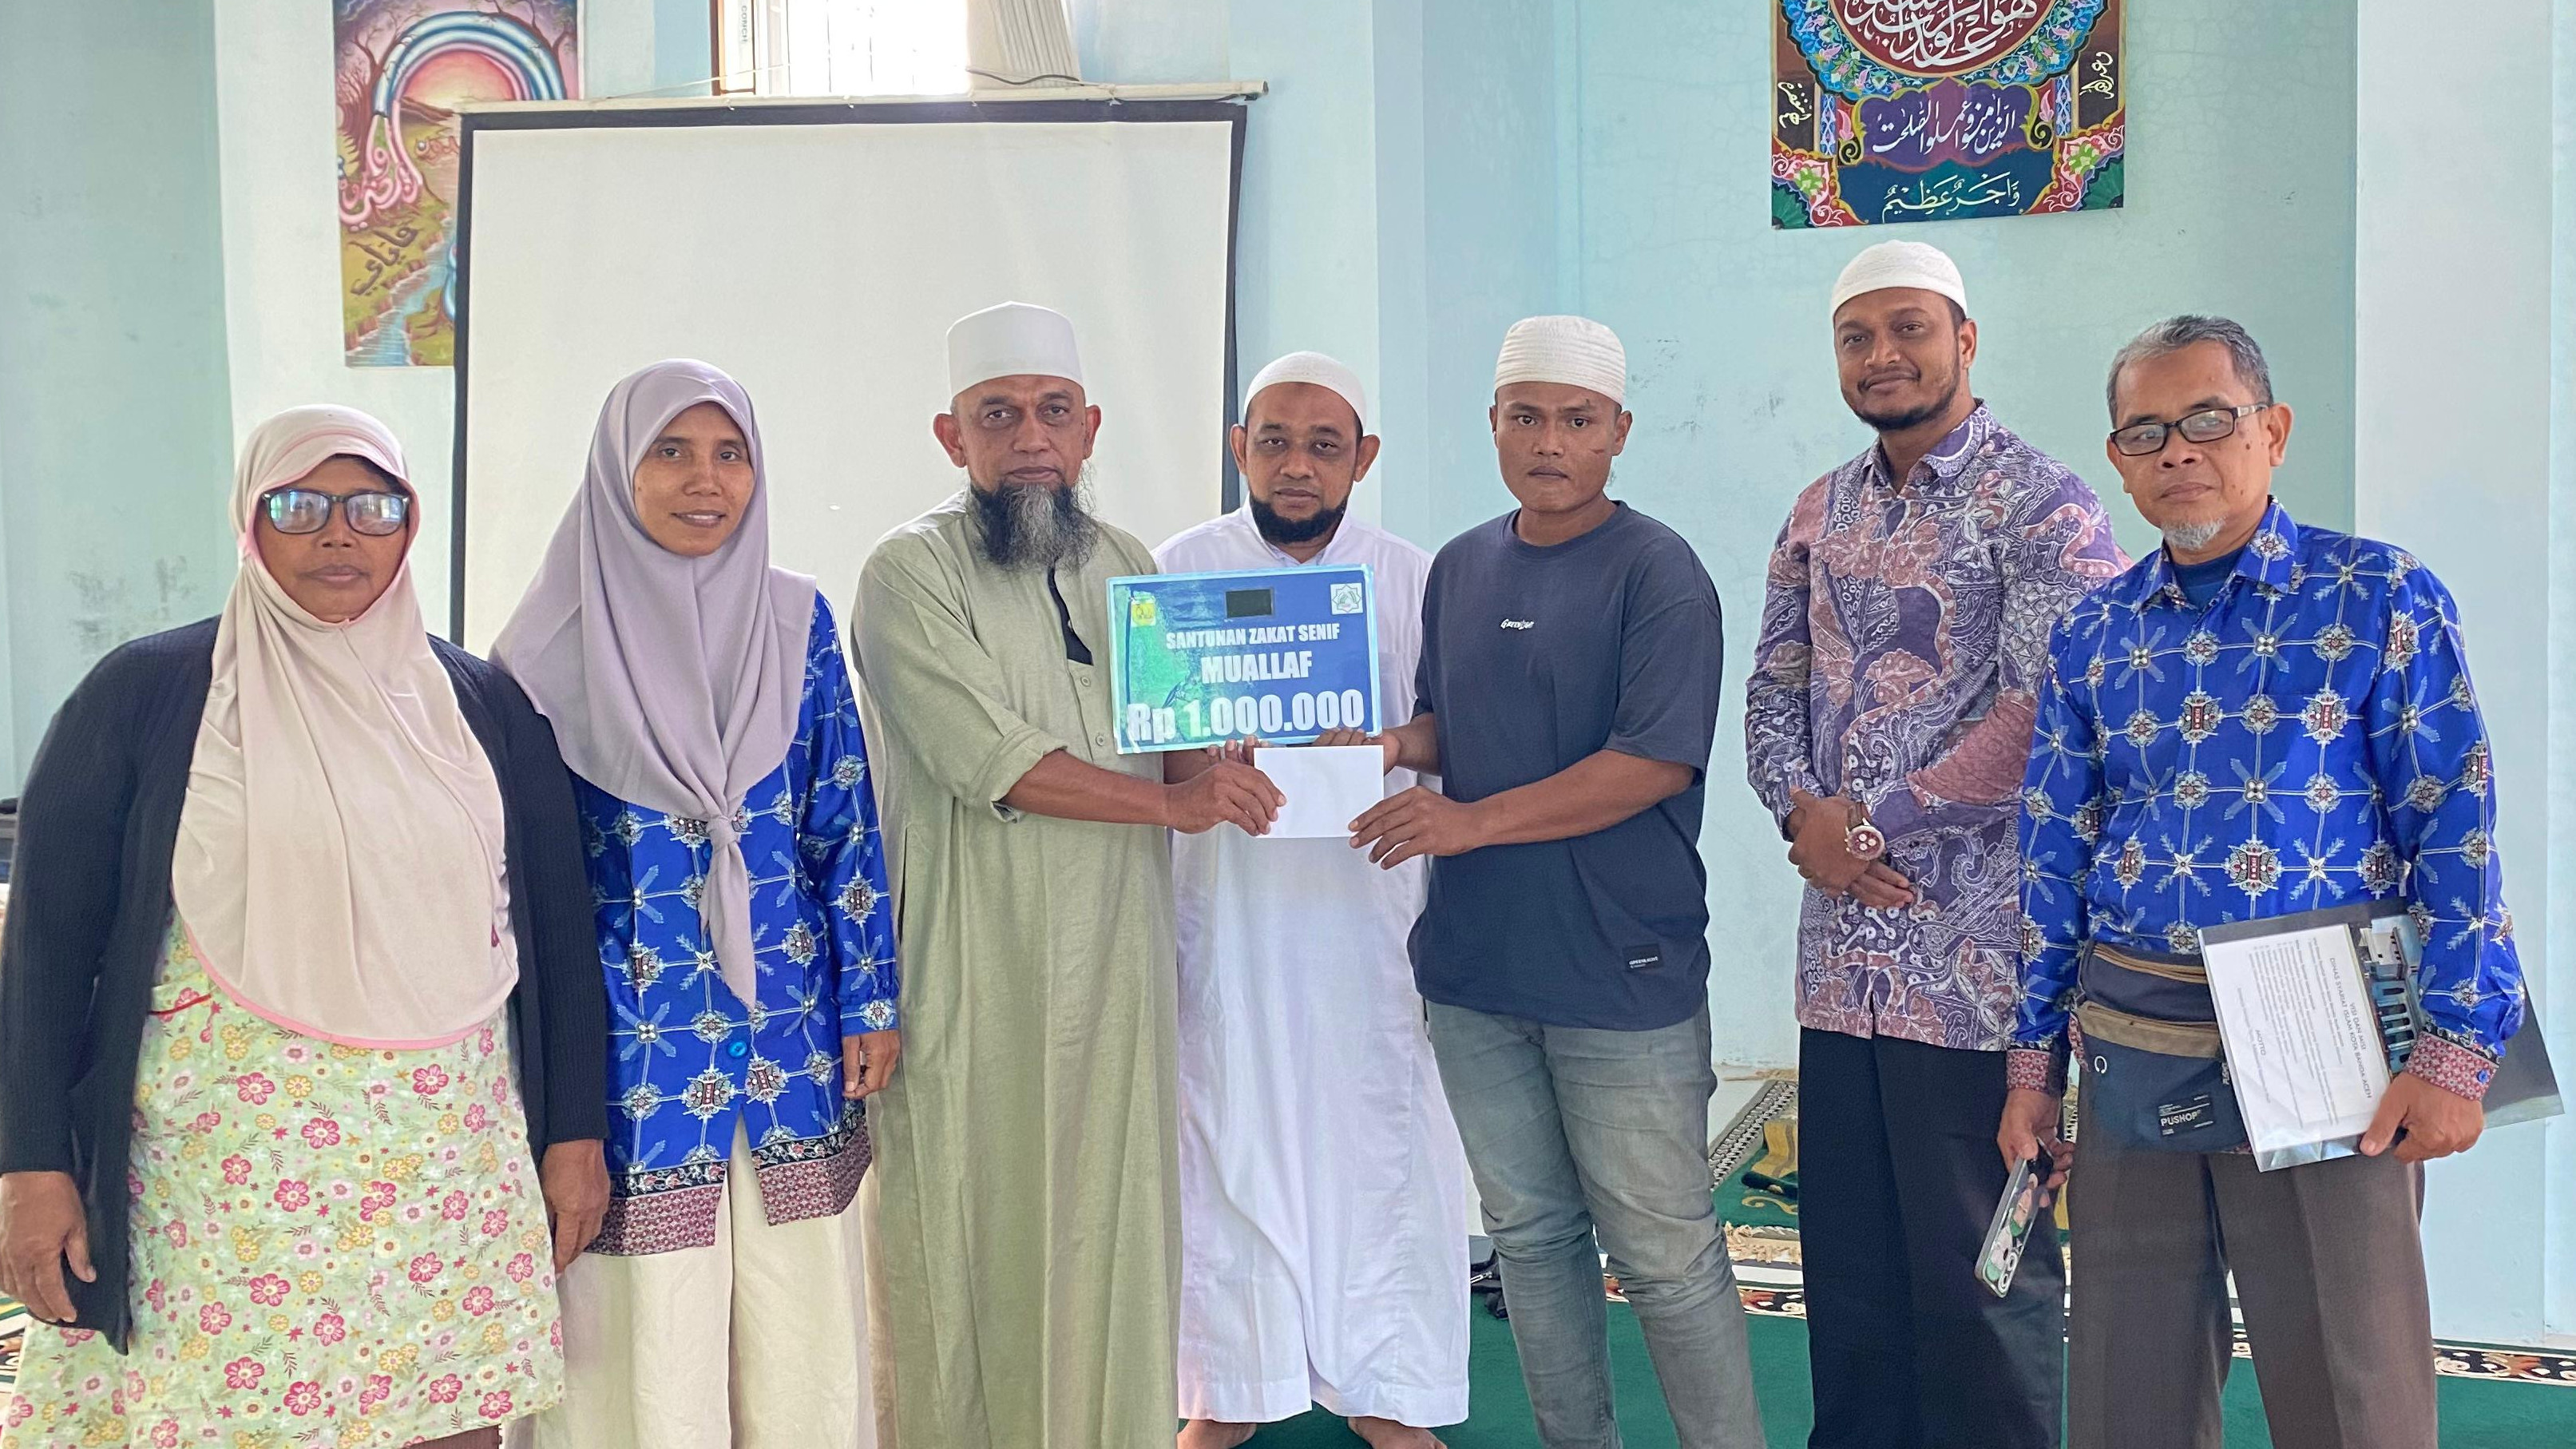 Senang Bergaul dengan Masyarakat Mayoritas Islam,  Pria Asal Sumatera Utara Memeluk Islam Tepat di Hari ke-3 Puasa Ramadhan